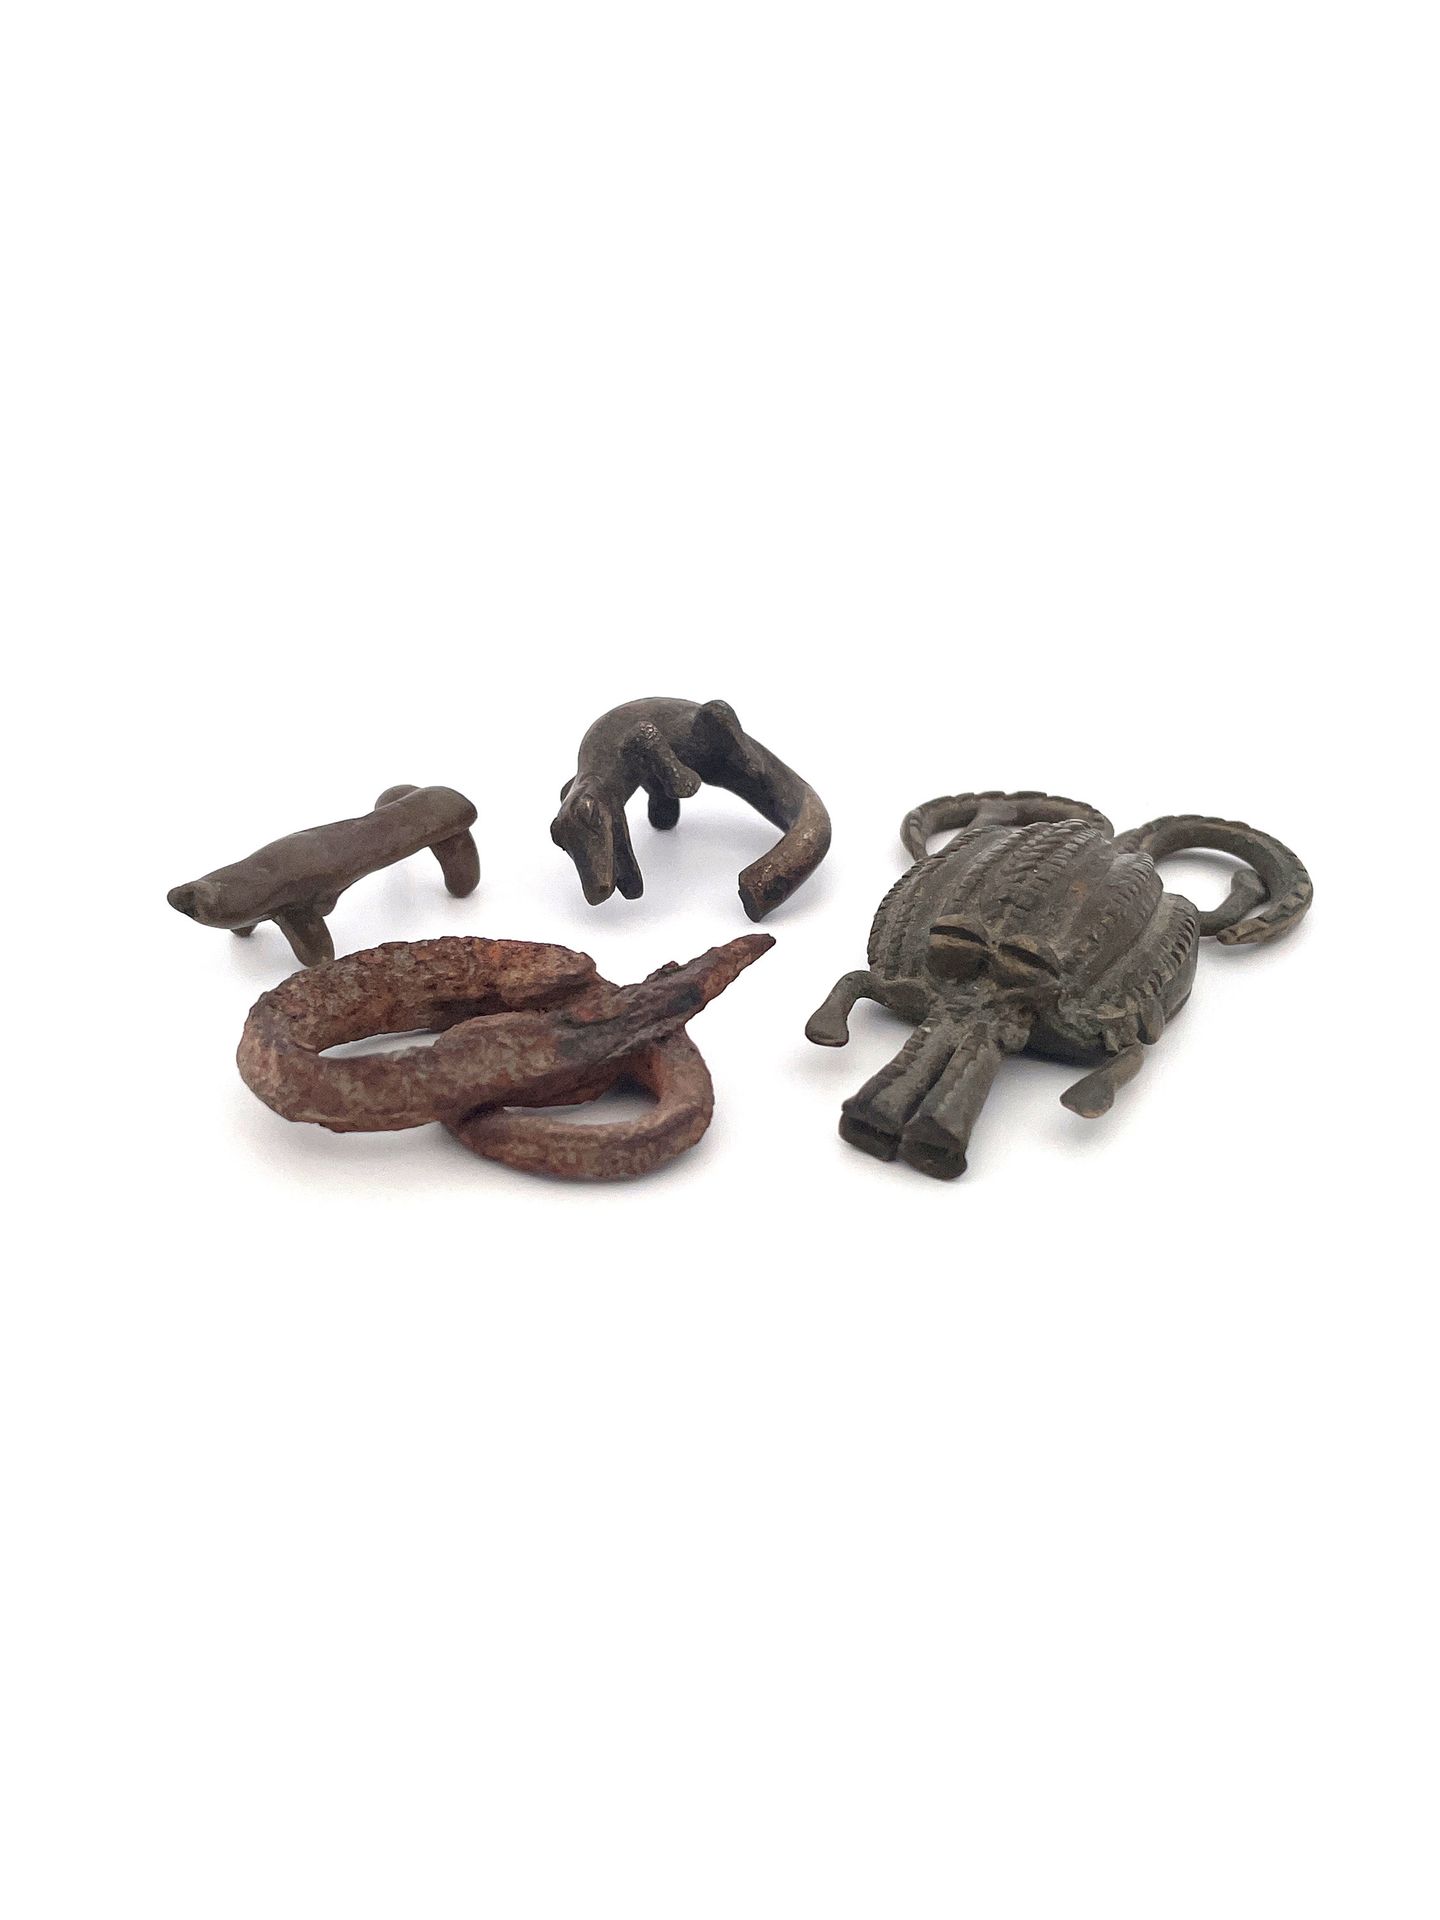 3 Miiature Bronzes and an Iron Snake 3 Kleinbronzen und 1 Eisenschlange

Ghana

&hellip;